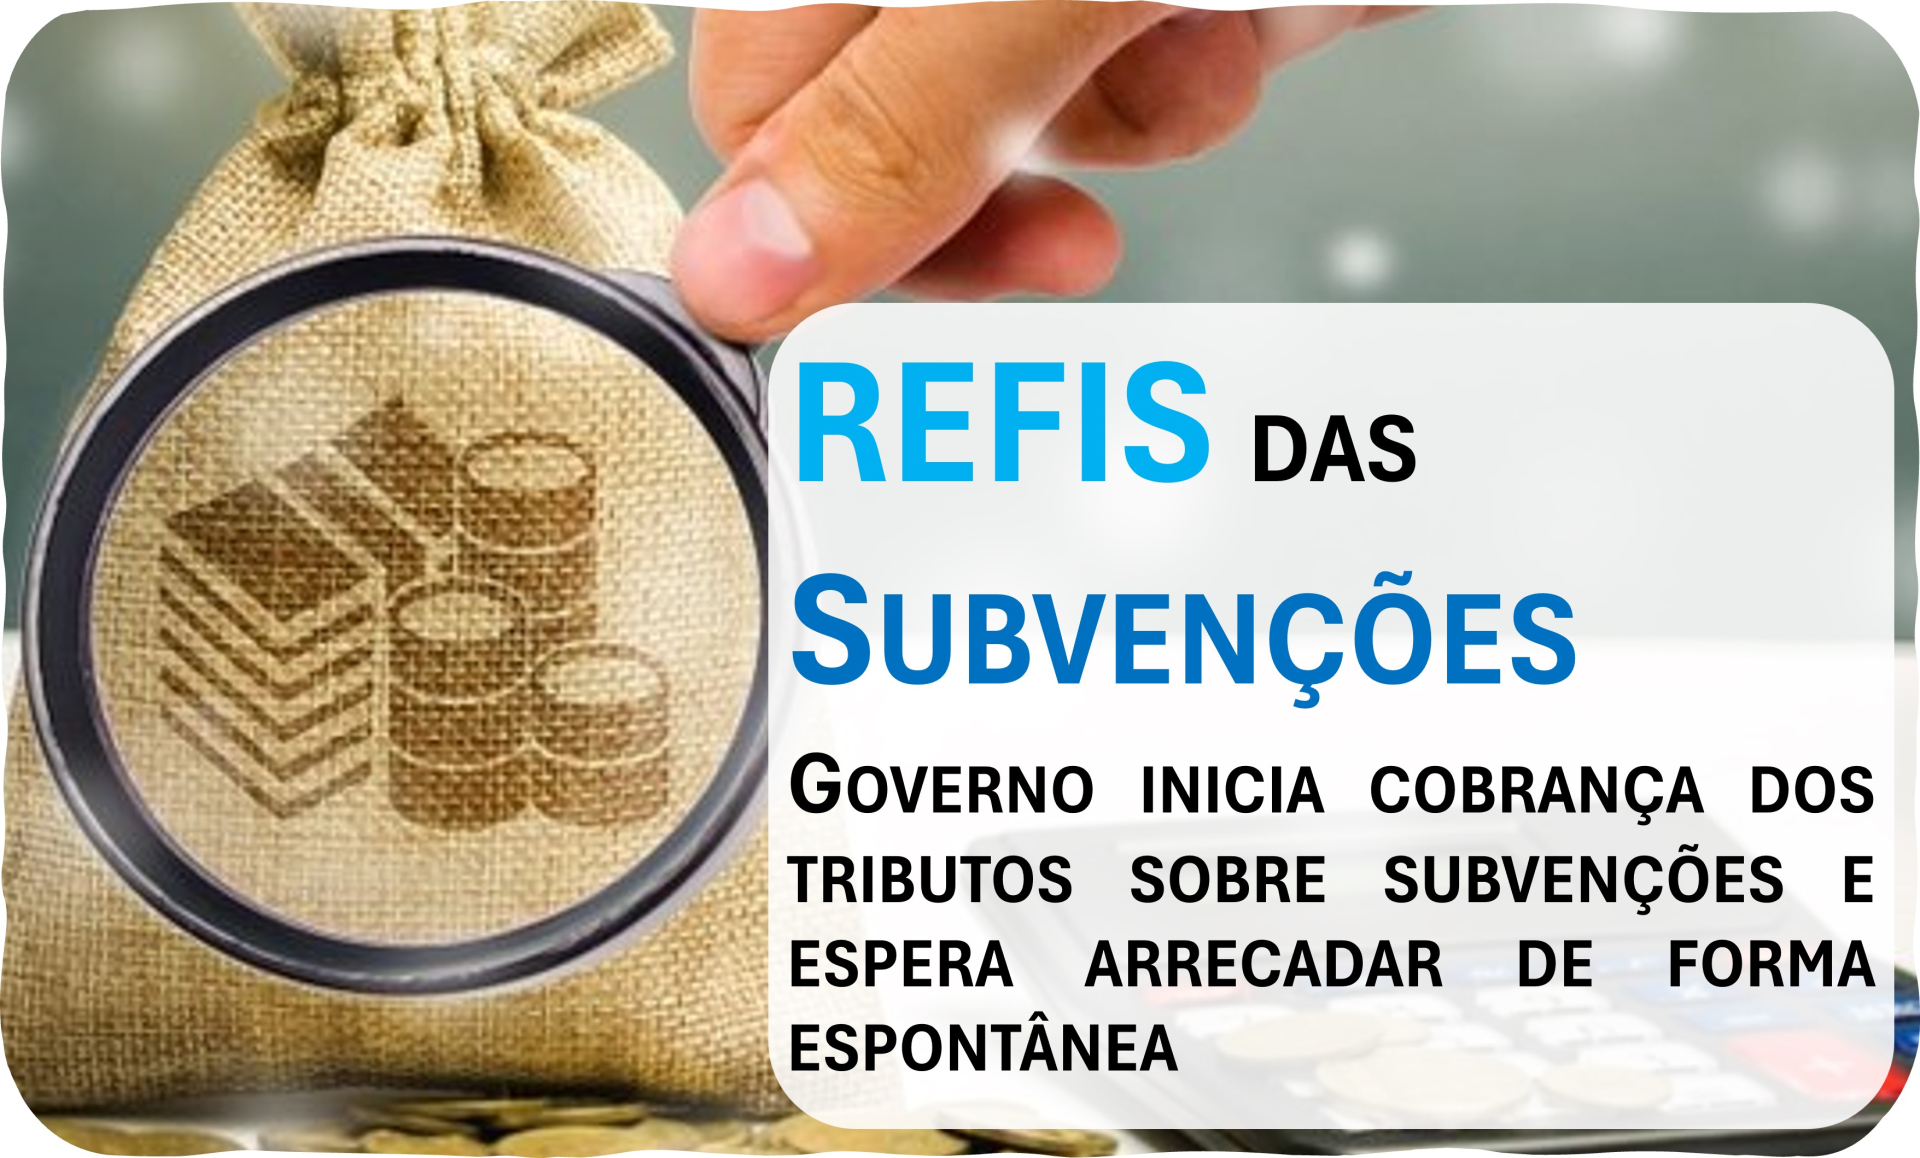 REFIS das Subvenes: Governo regulamenta parcelamento de dbitos para encerrar discusses judiciais!